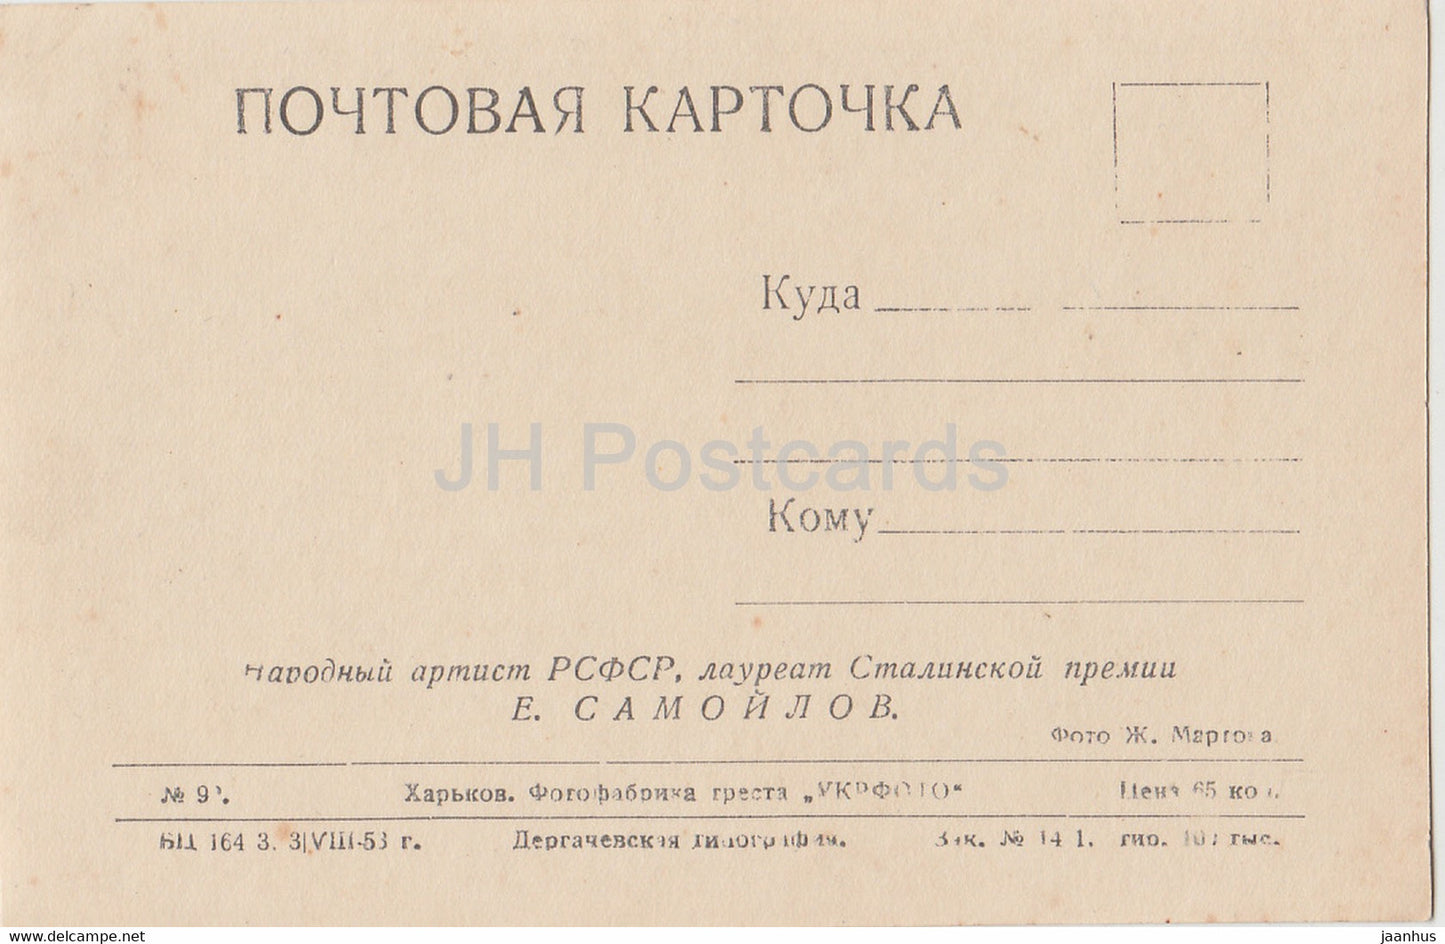 Sowjetischer Schauspieler Jewgeni Samojlow – Film – Film – 1953 – alte Postkarte – Russland UdSSR – unbenutzt